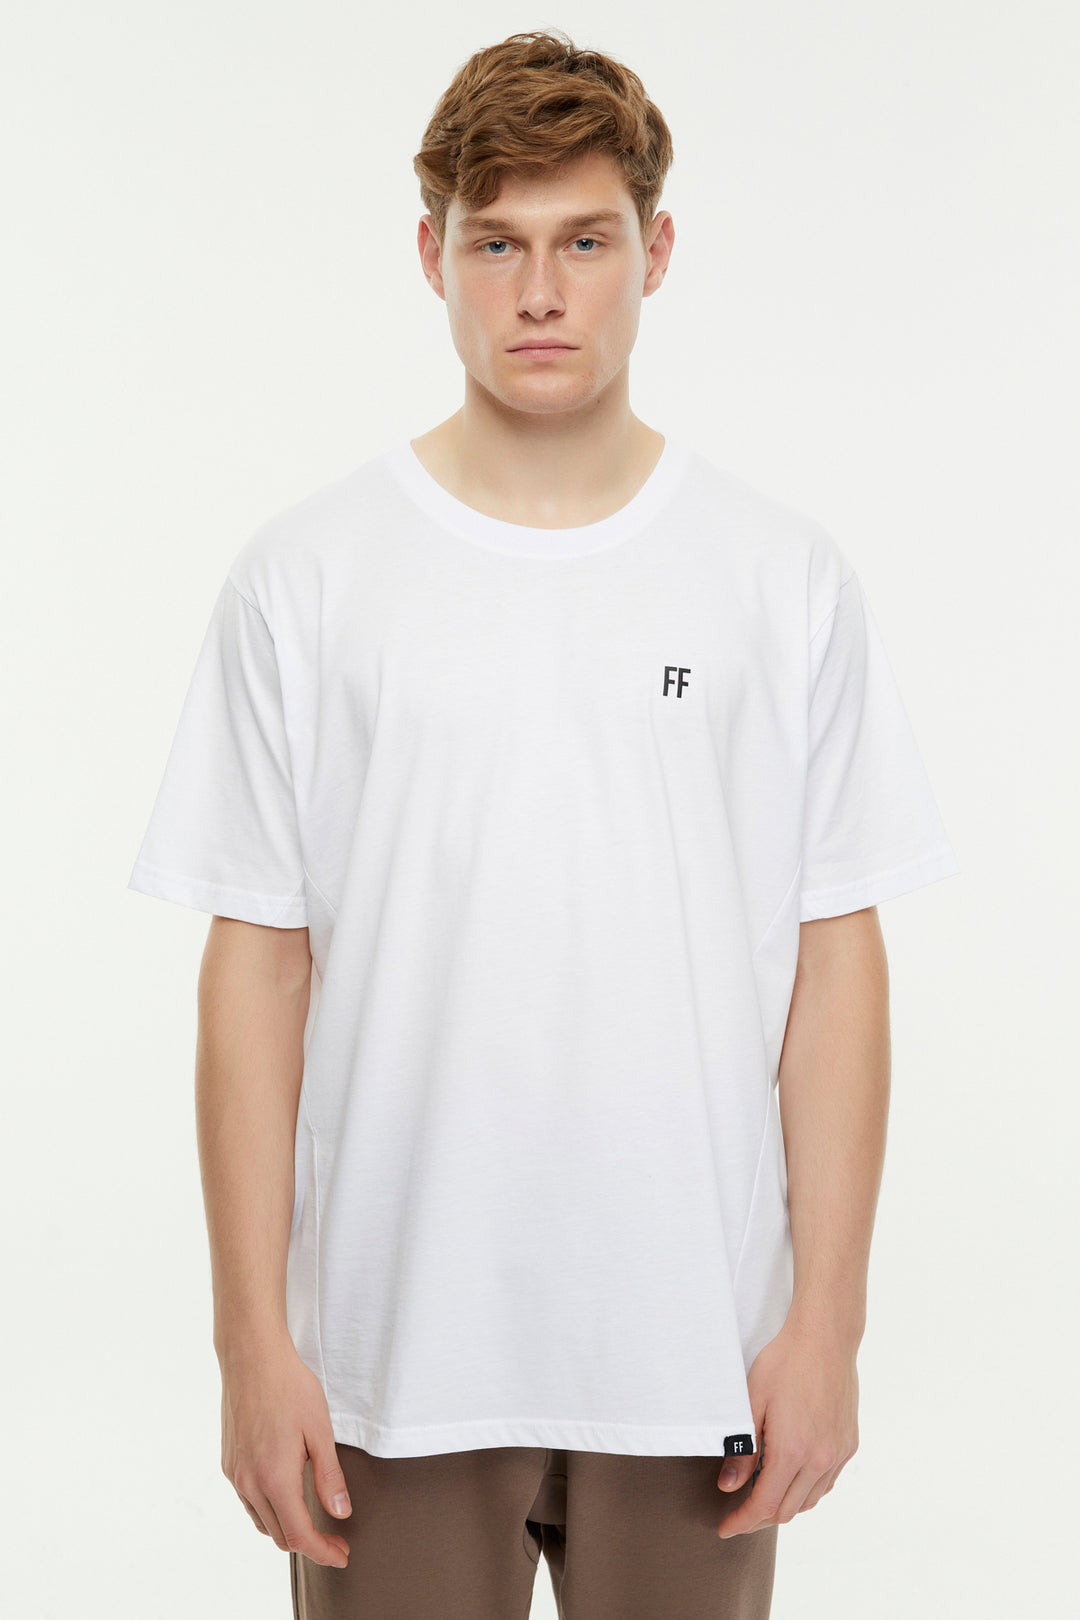 FF / Oversize T-shirt